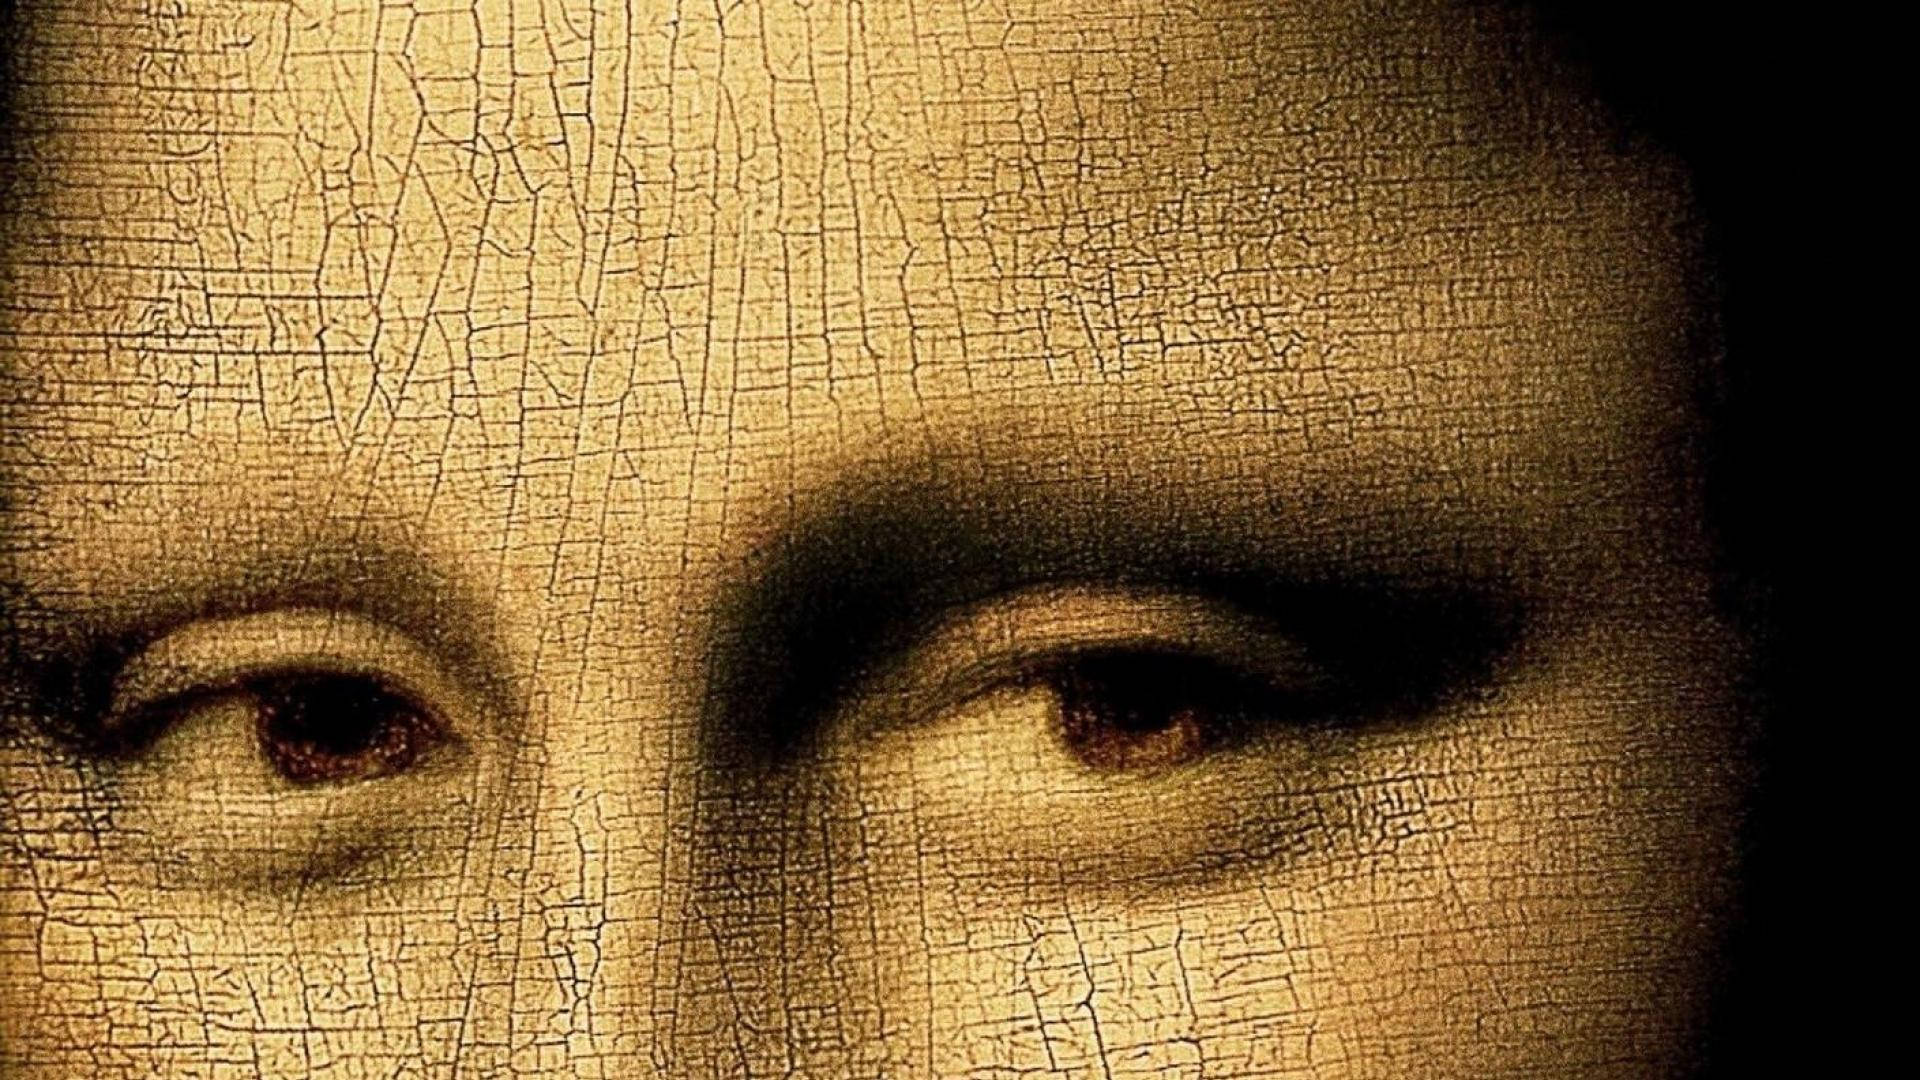 Джоконда картина Леонардо да Винчи глаза